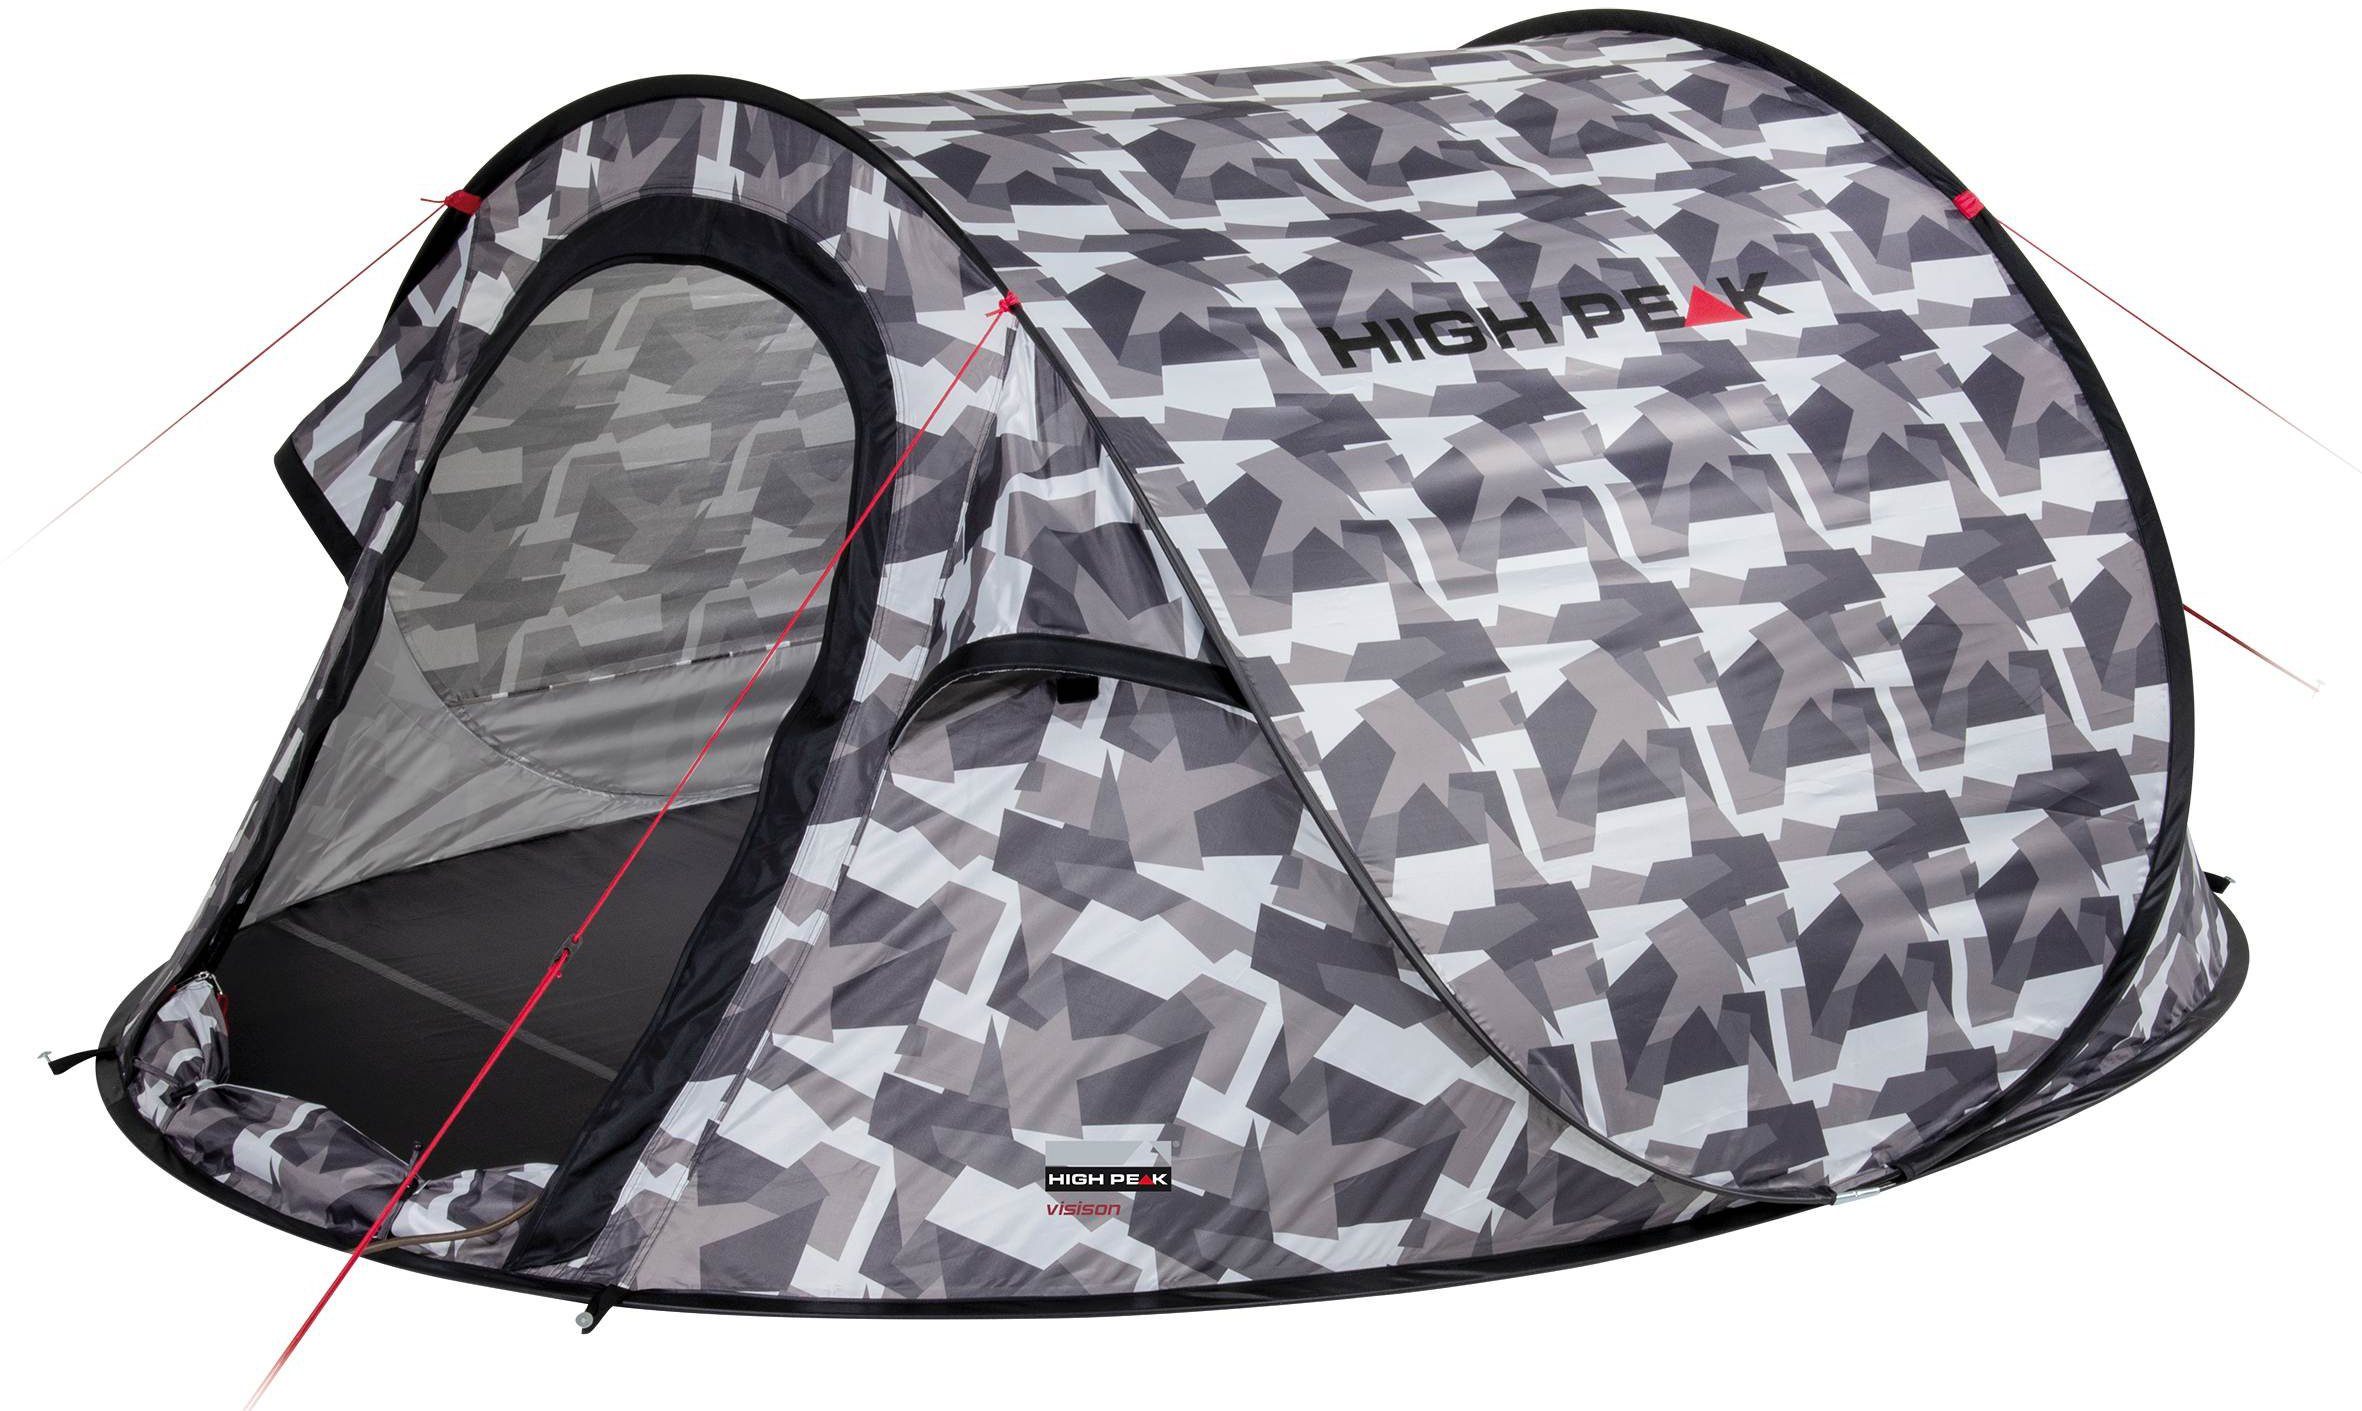 High Peak pop-up tent Pop up tent Vision 3, 2 Personen (met transporttas)